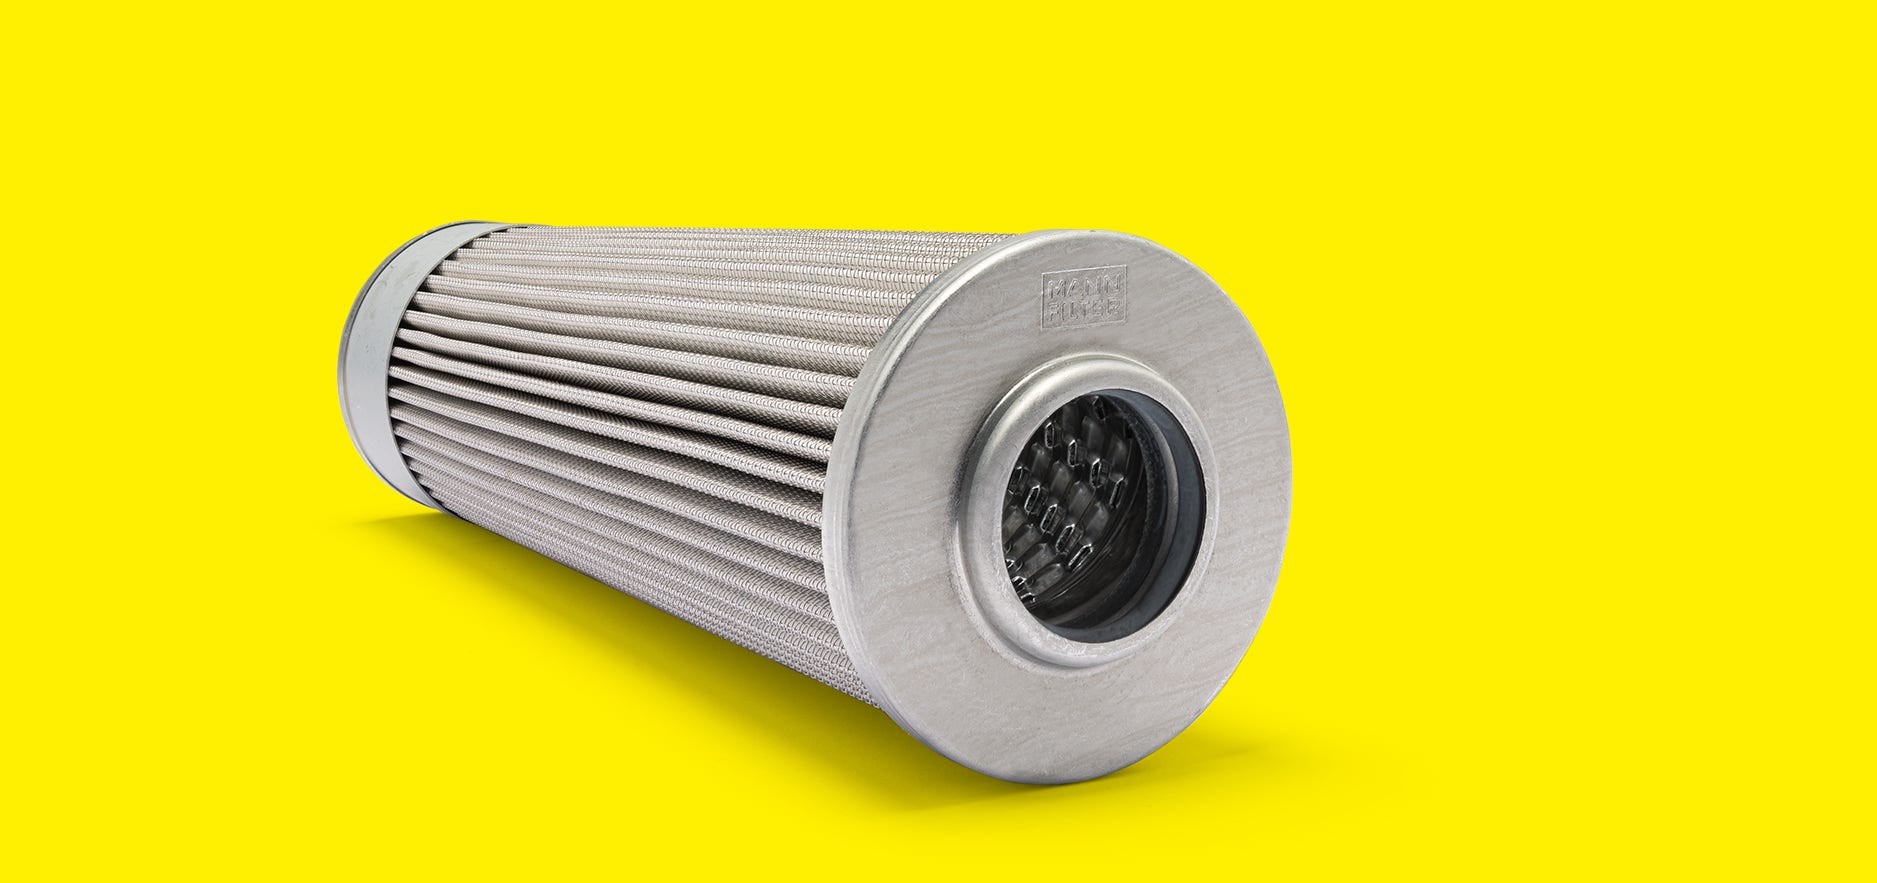 MANN-FILTER emiş filtreleri/süzgeçleri, hidrolik sistemlerdeki pompaları kaba partiküllere karşı korur.